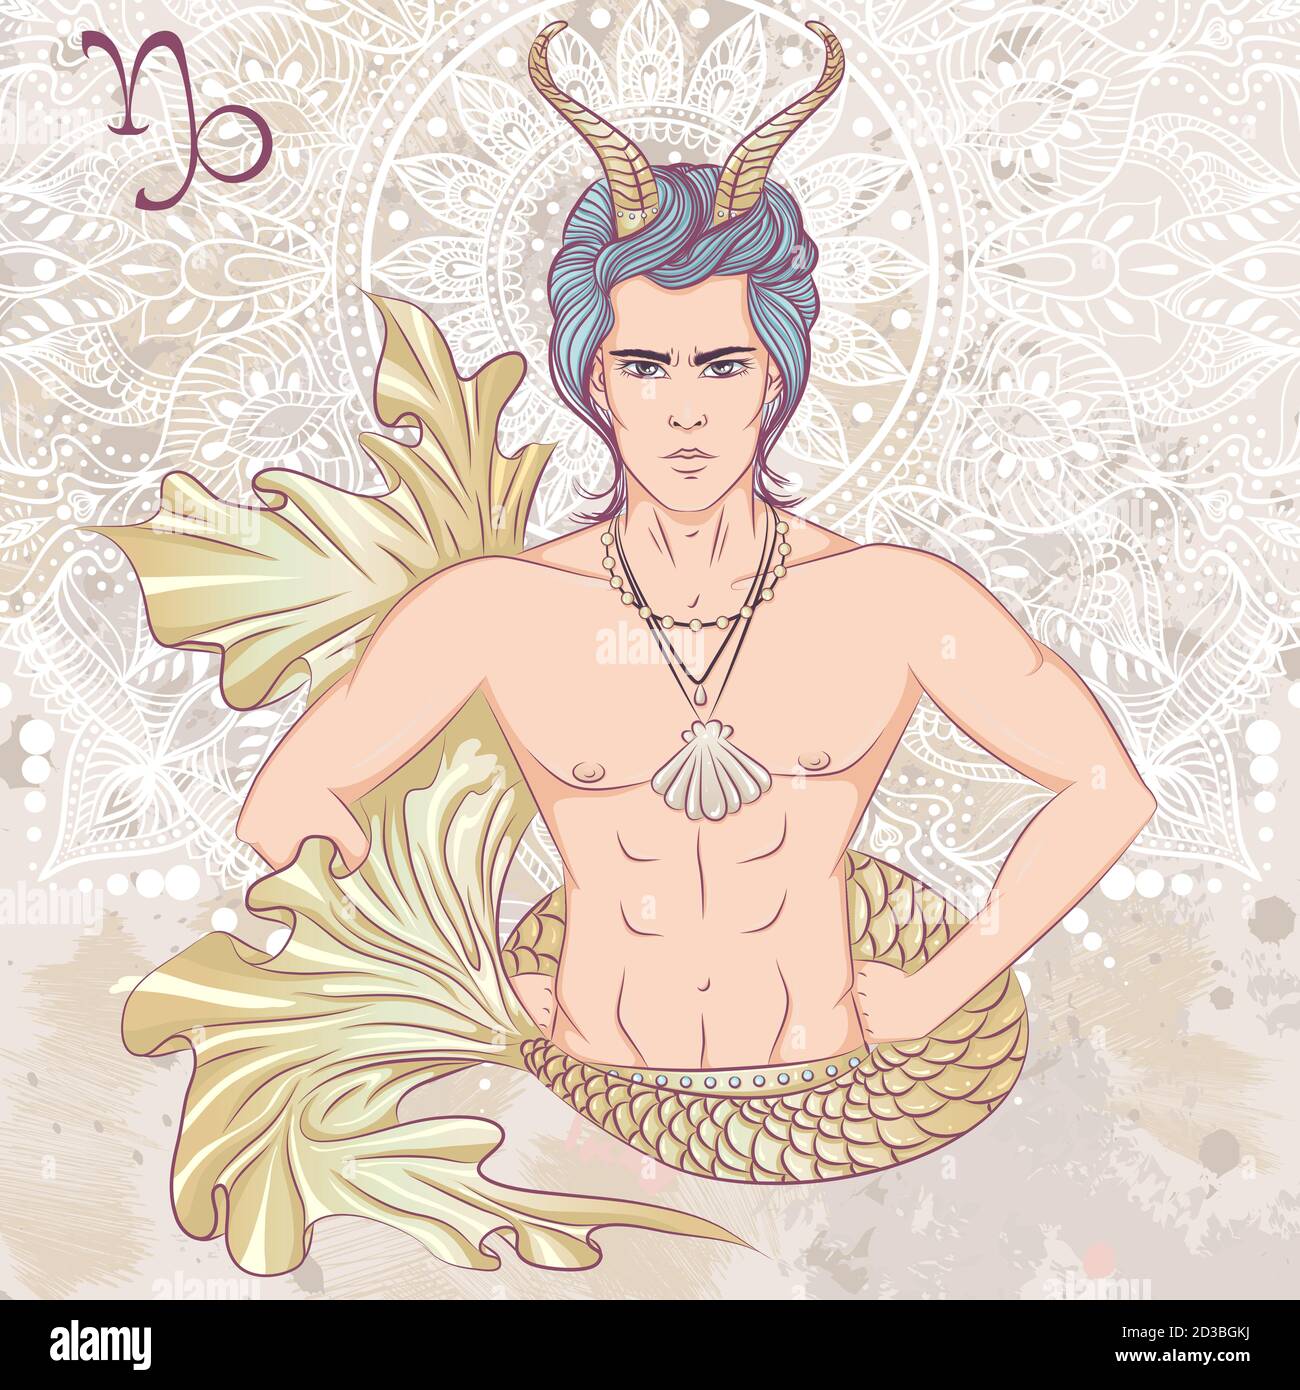 Zodiaco. Illustrazione vettoriale del segno astrologico del Capricorno come un uomo con un torso nudo. L'illustrazione su sfondo grunge decorativo in colori retrò Illustrazione Vettoriale